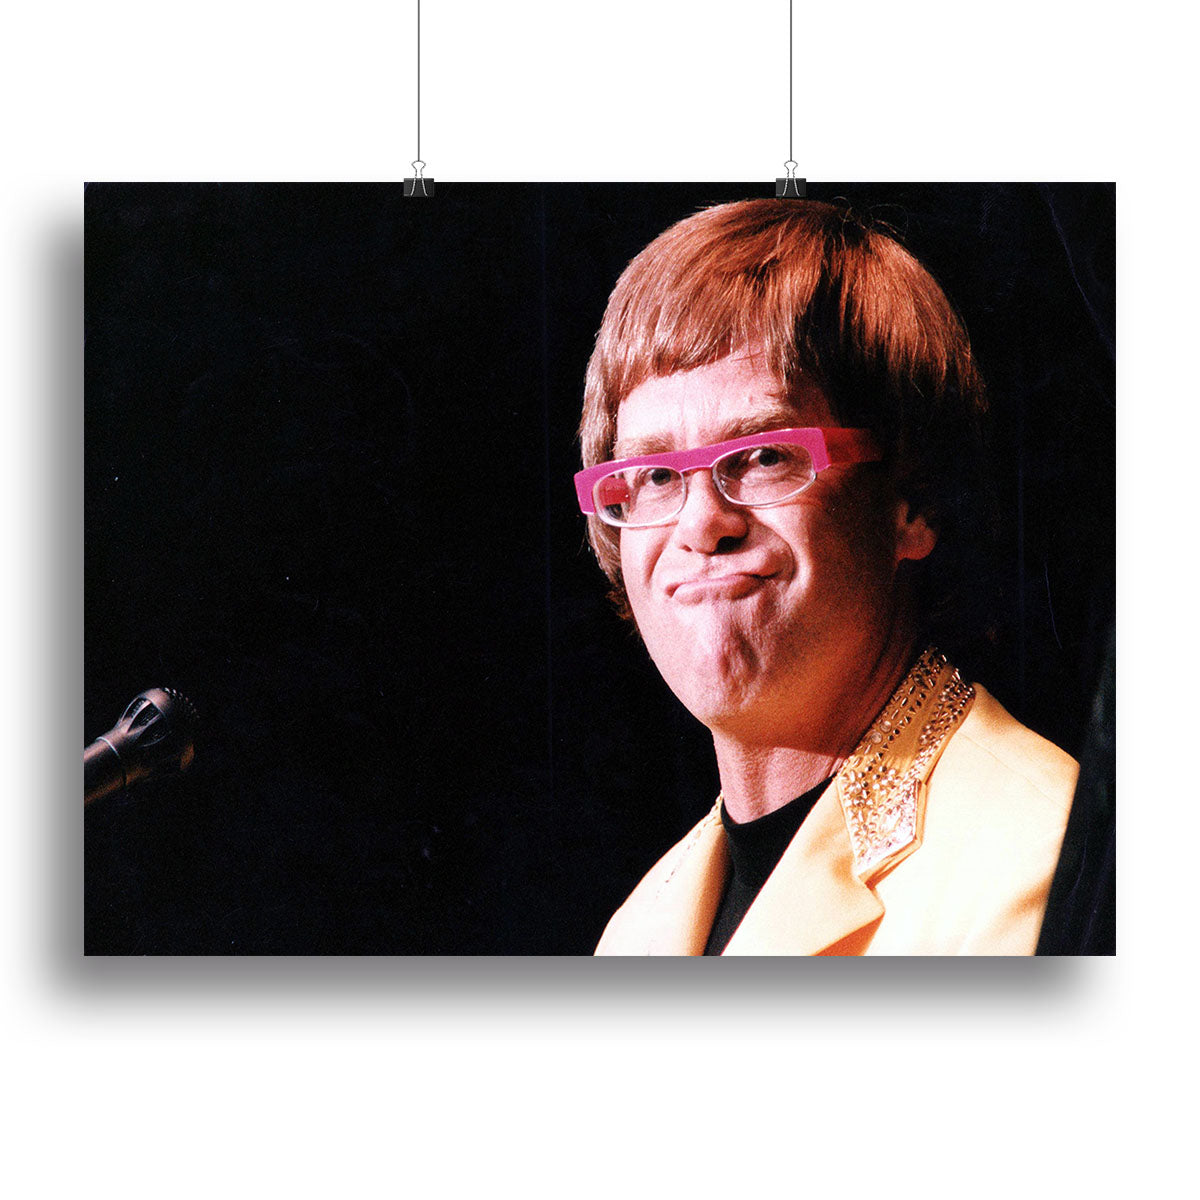 Elton John at Wembley 1992 Canvas Print or Poster - Canvas Art Rocks - 2